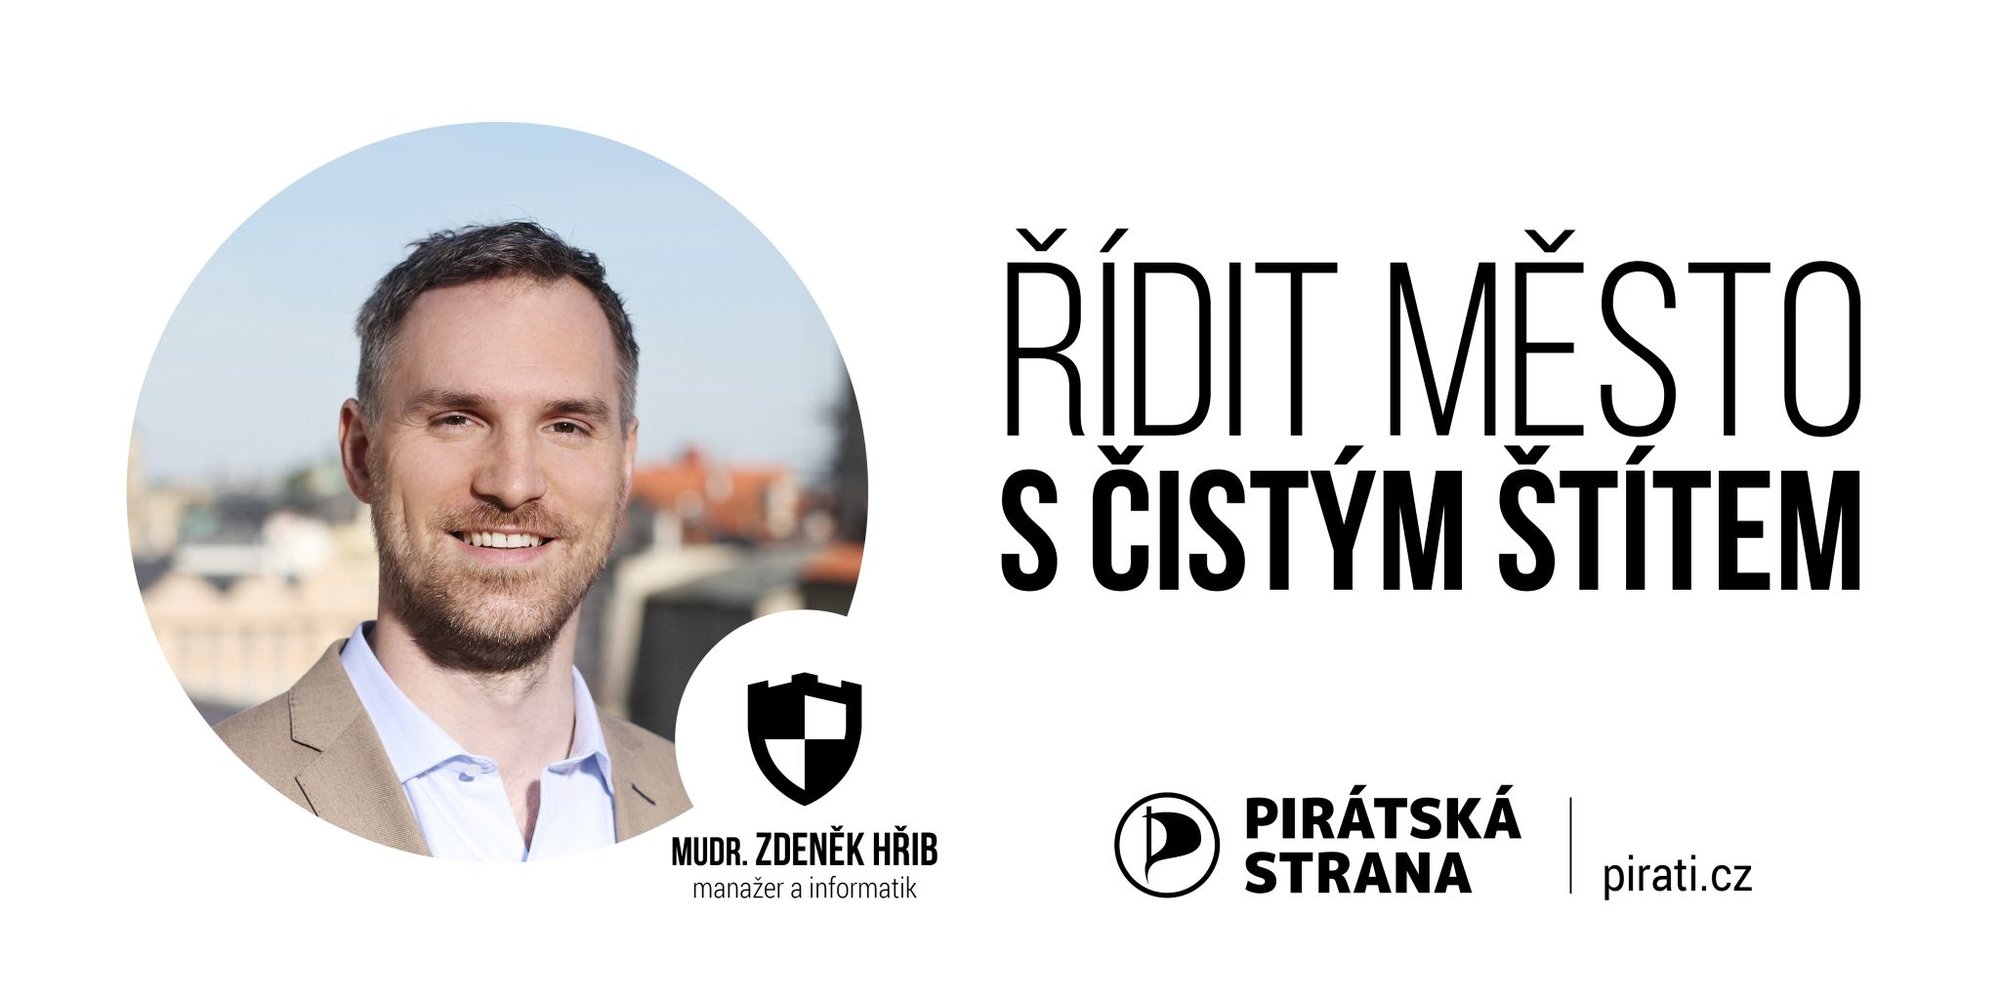 Potřebujeme takový volební výsledek, aby nás už kmotři nemohli obejít – říká lídr Pirátů pro pražské komunální volby